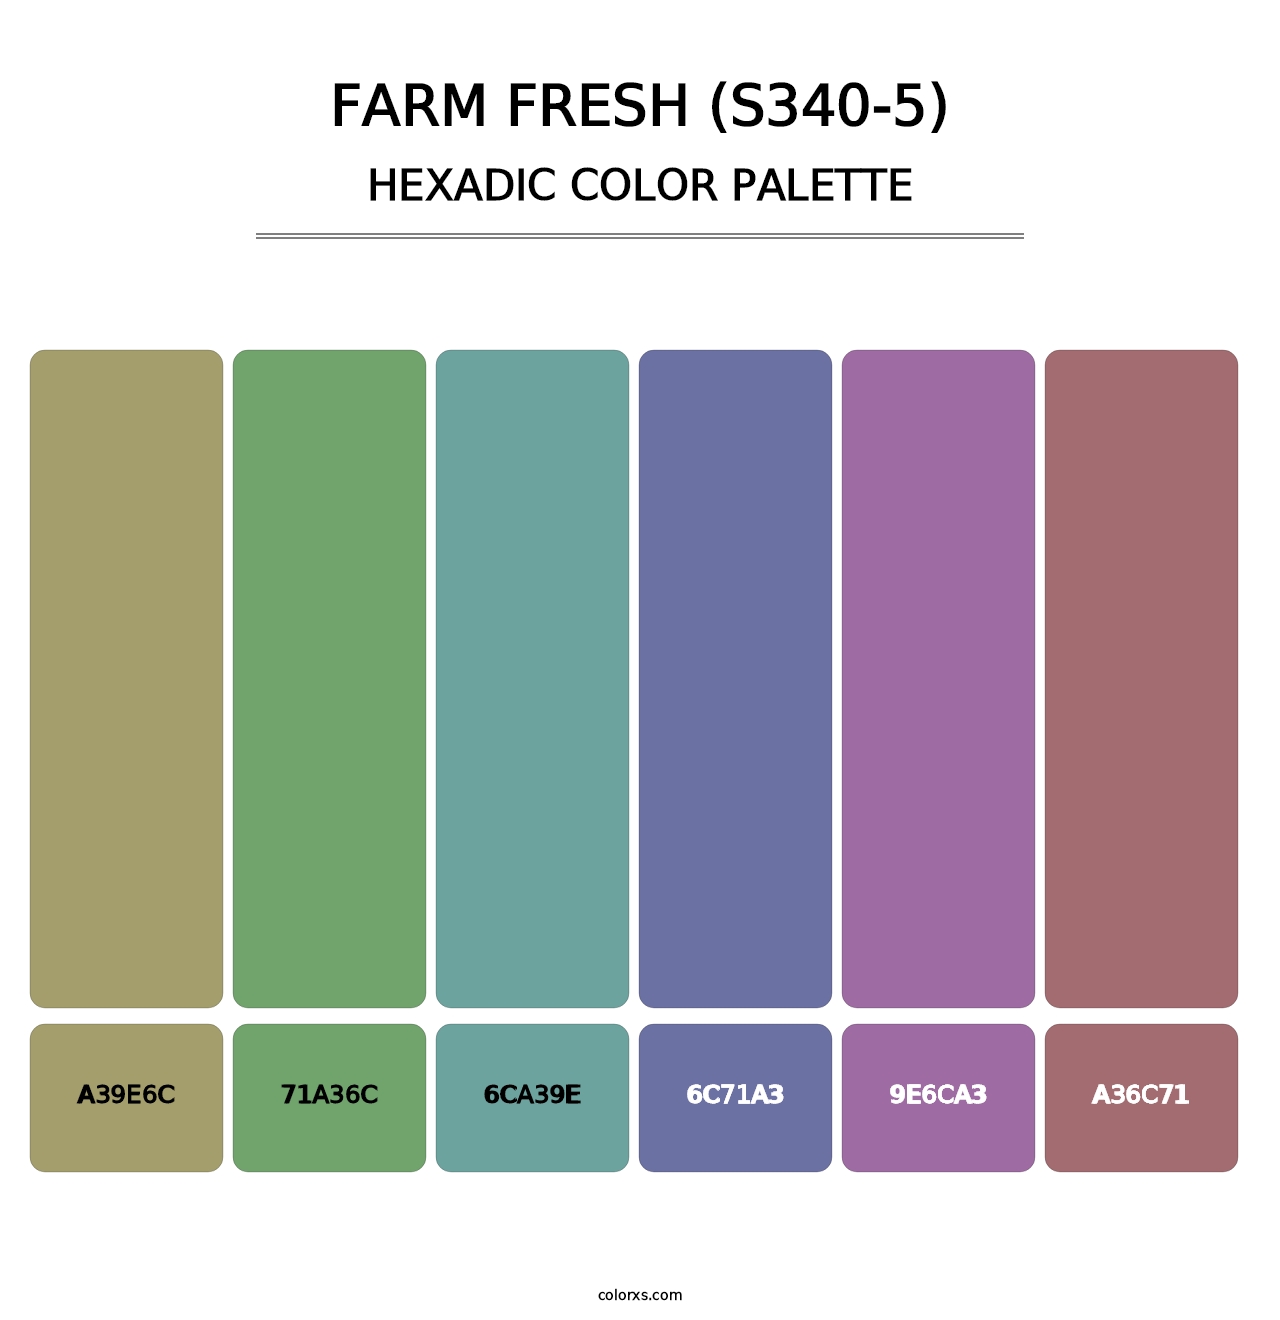 Farm Fresh (S340-5) - Hexadic Color Palette